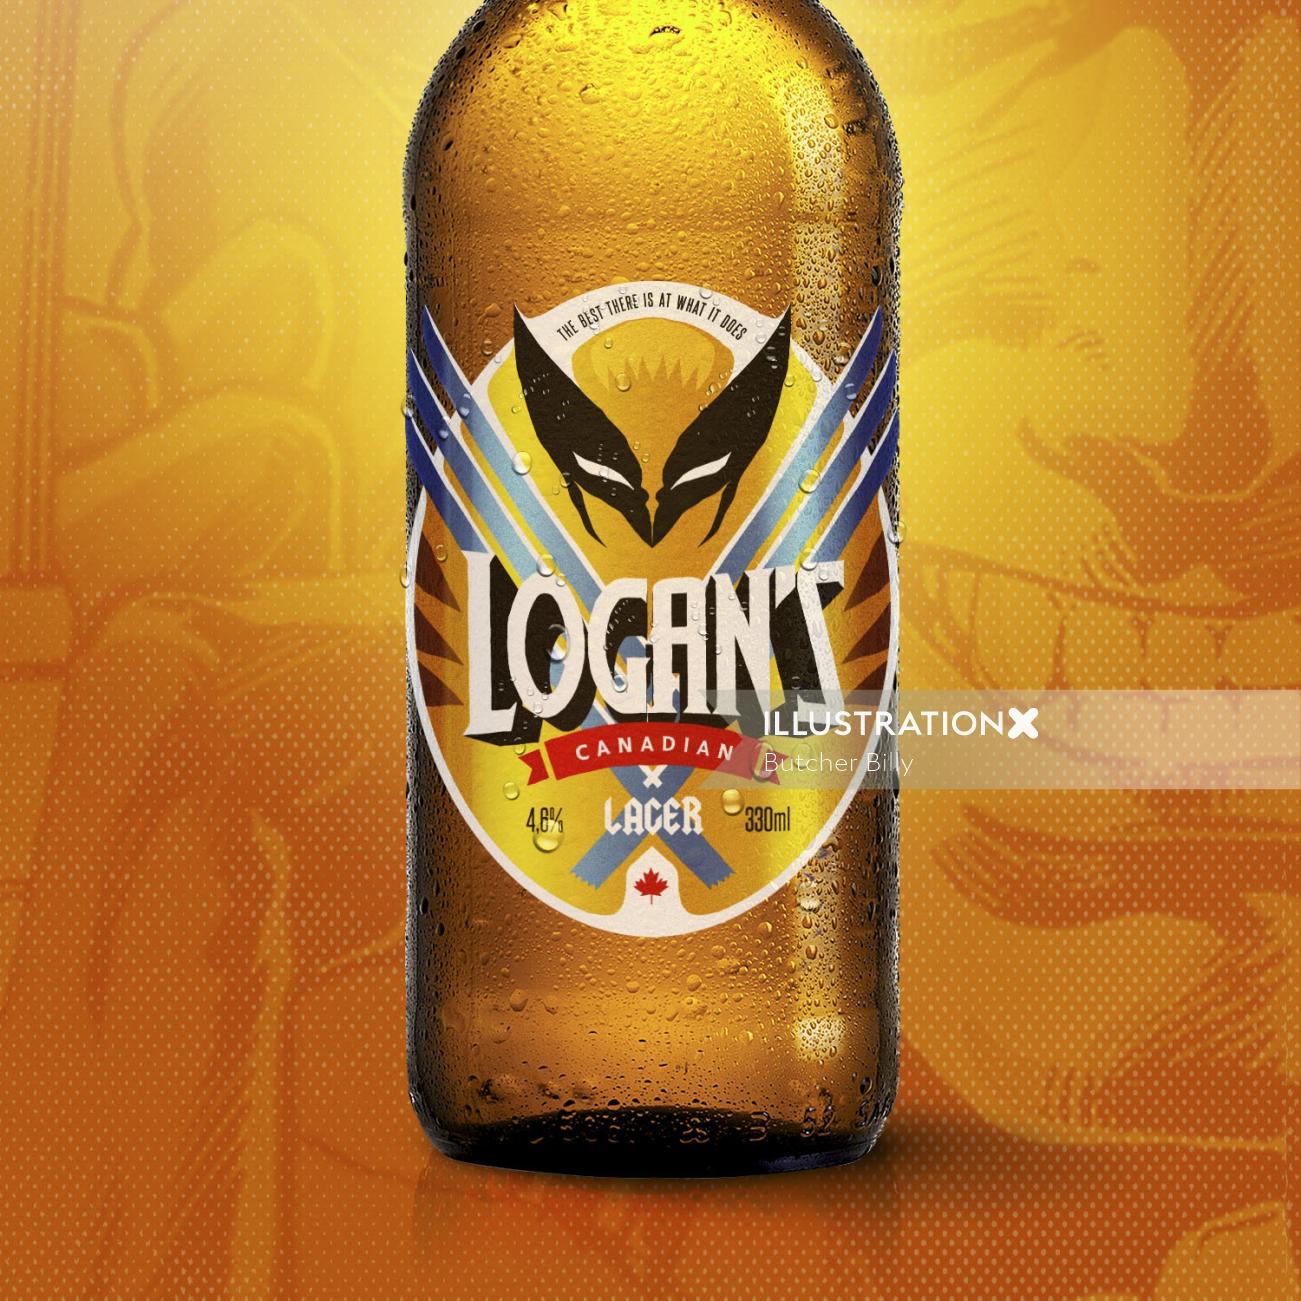 Logan's Canadian Lager Beer Bottle Illustration